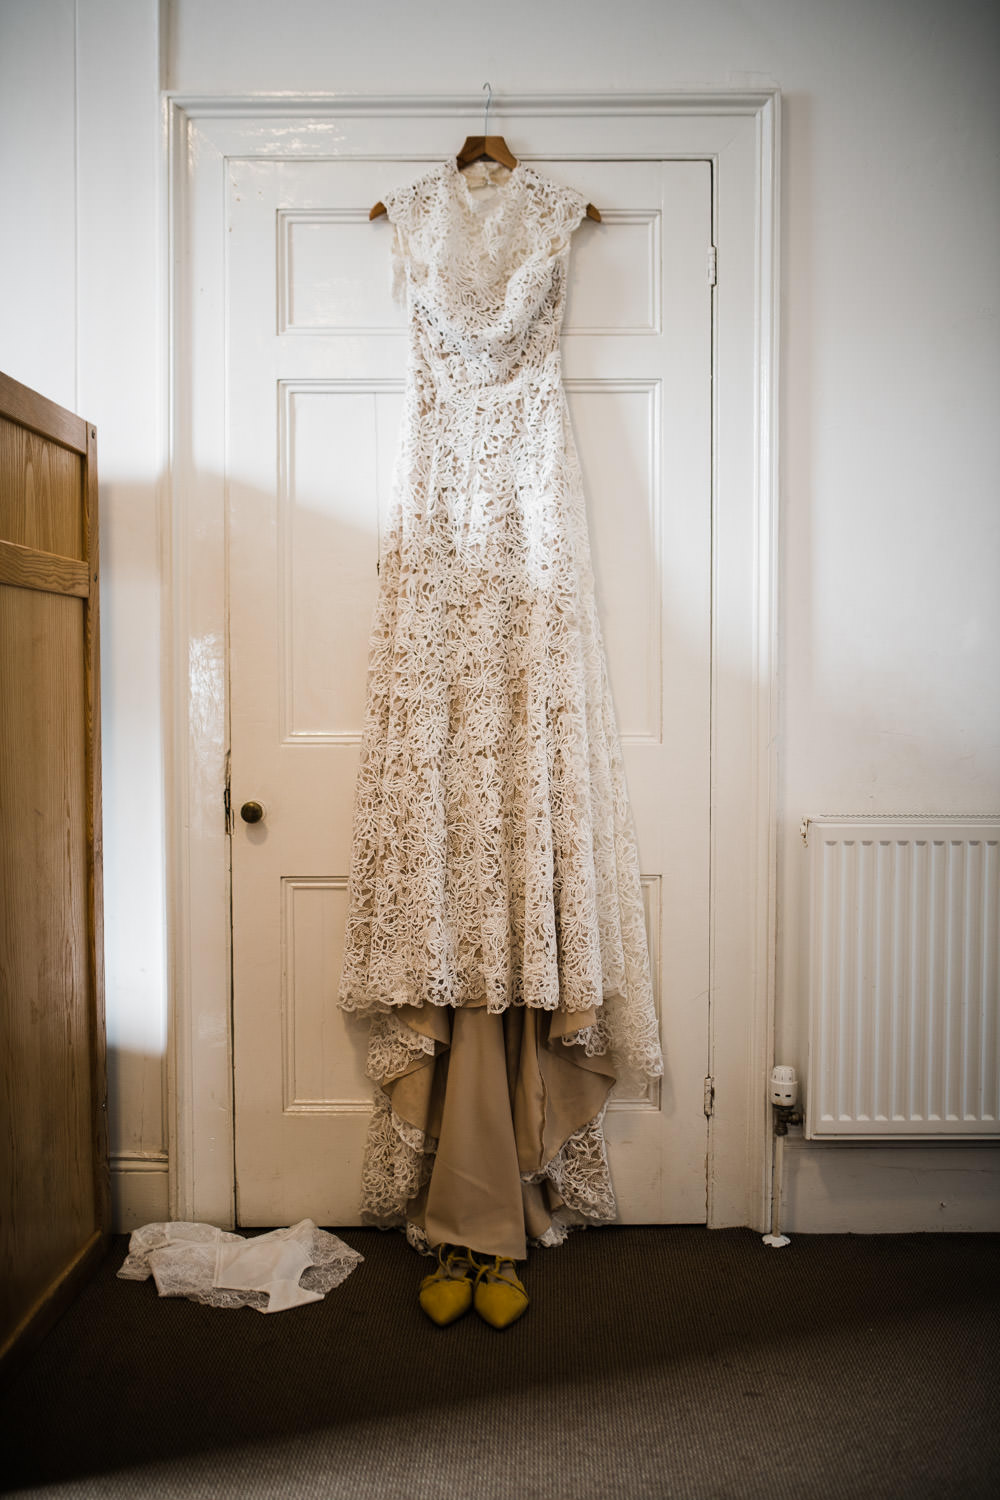 vintage wedding dress hanging on a door frame